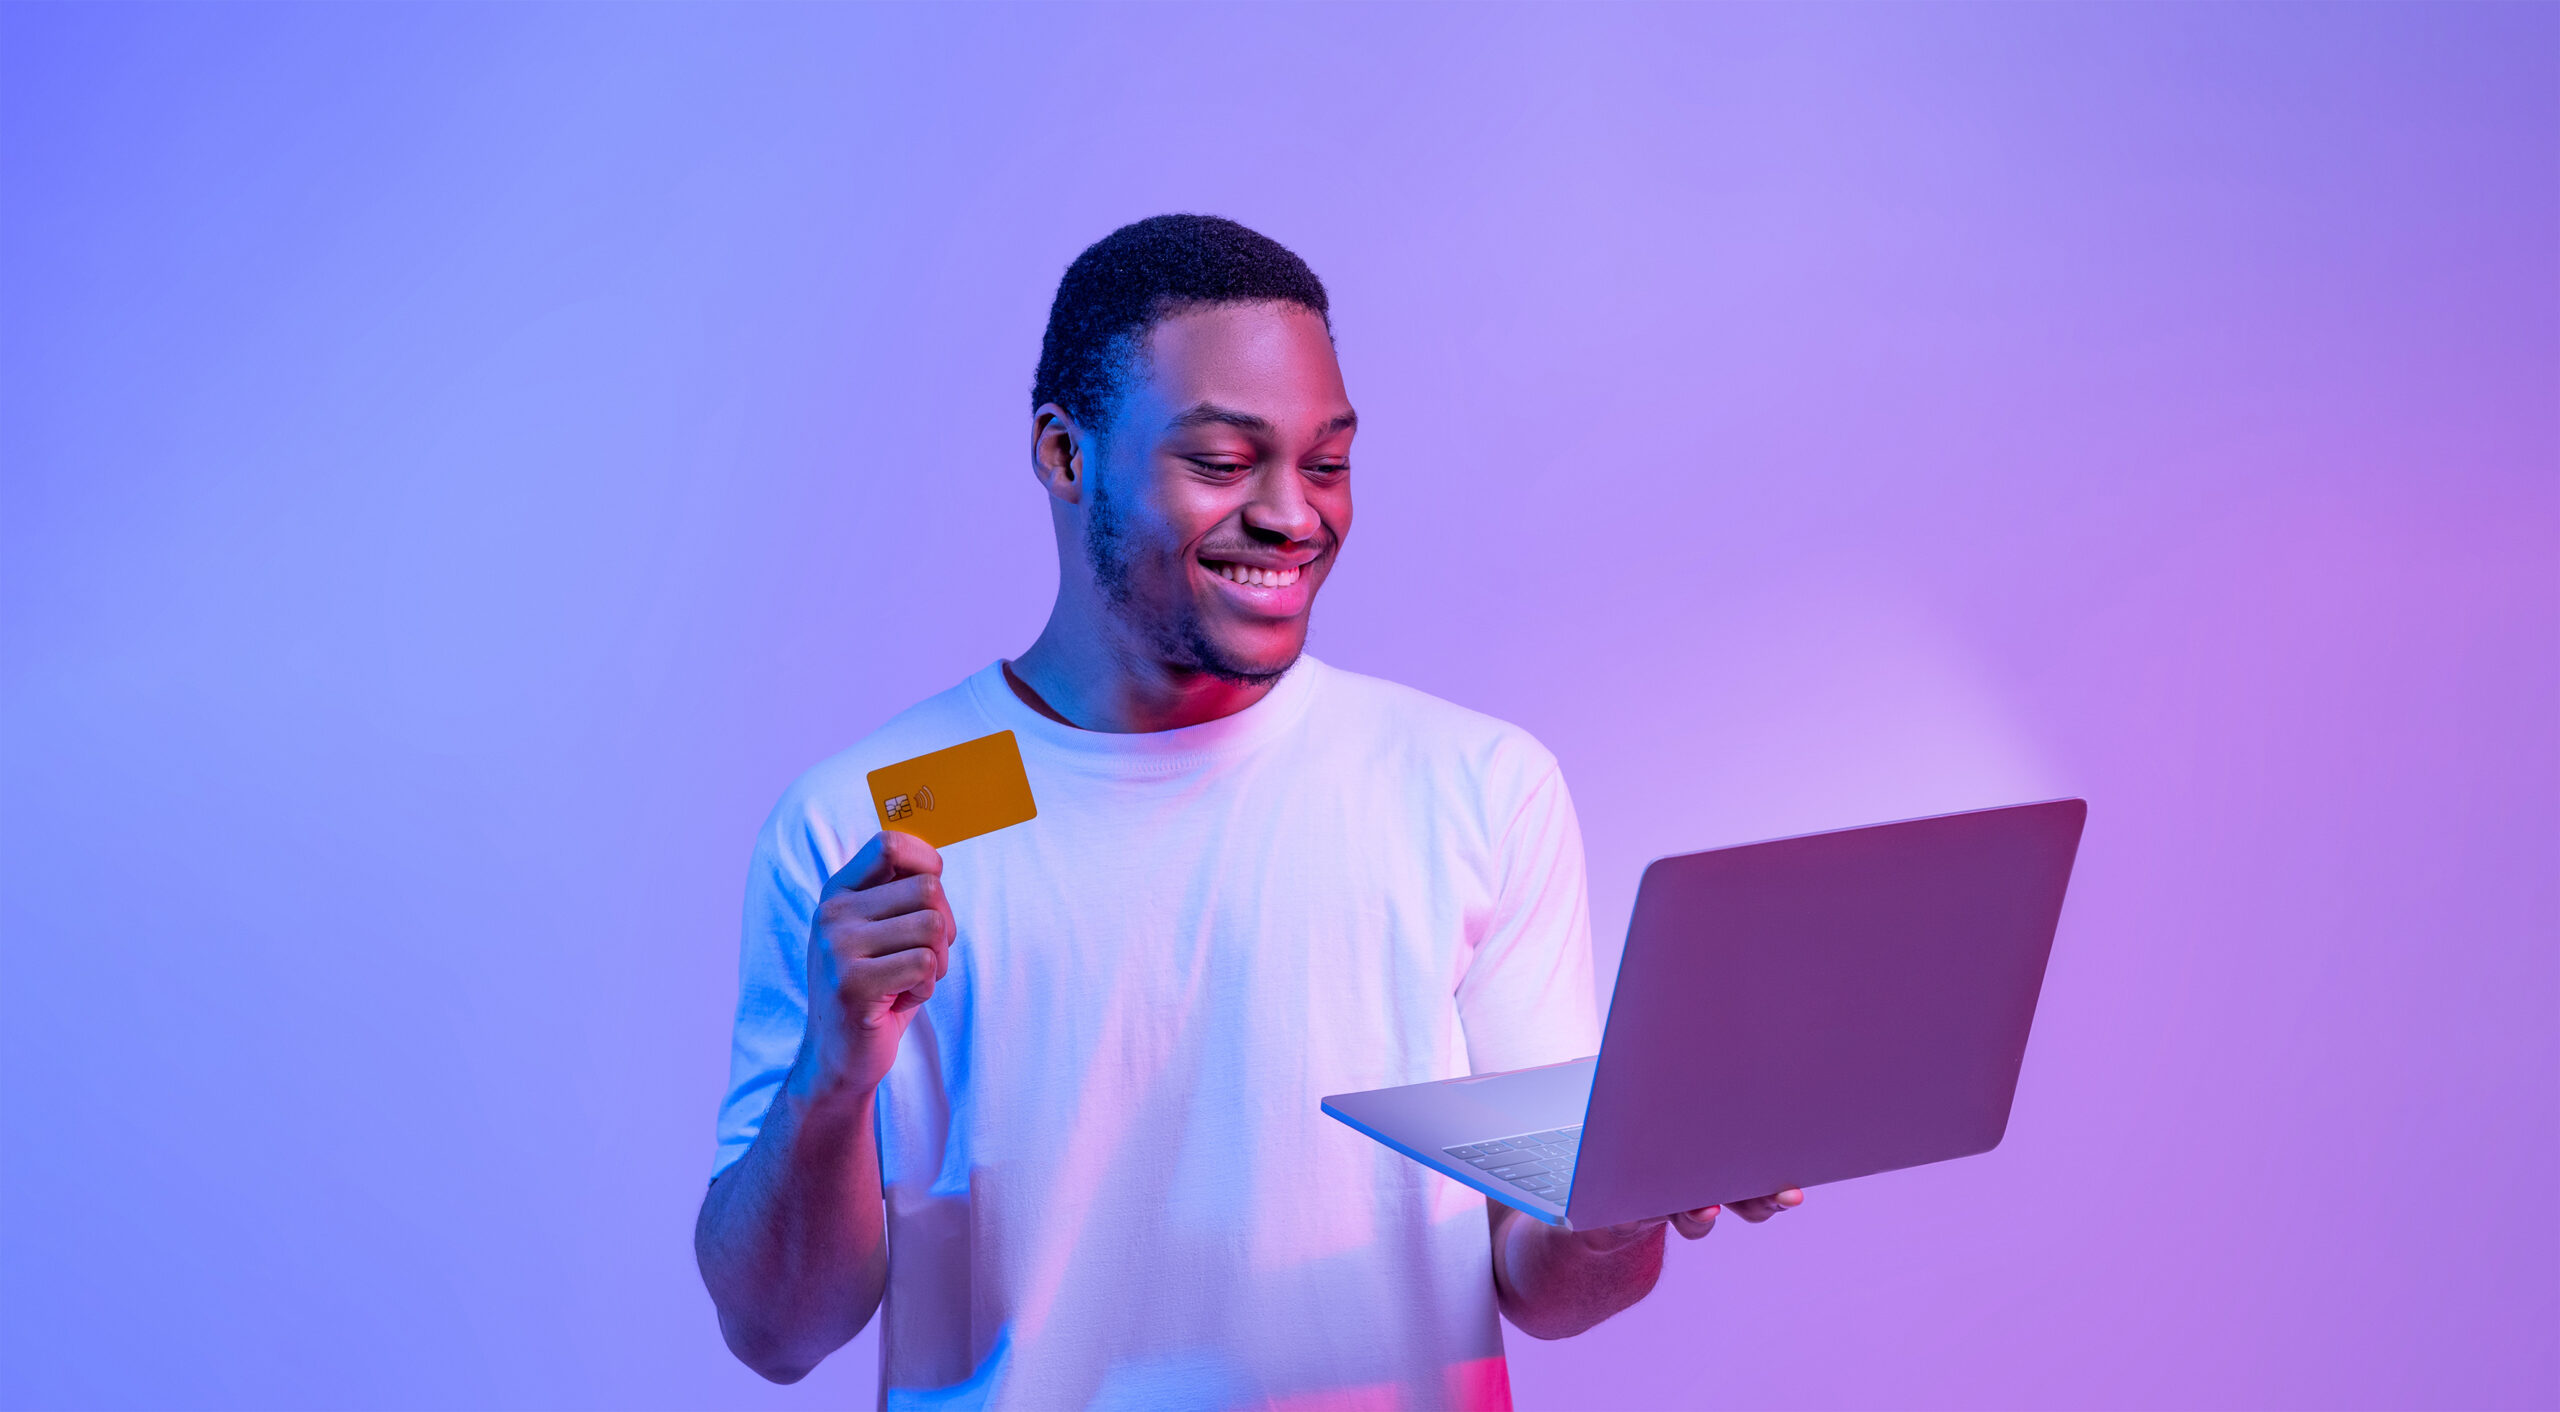 Man holding credit card smiling at laptop